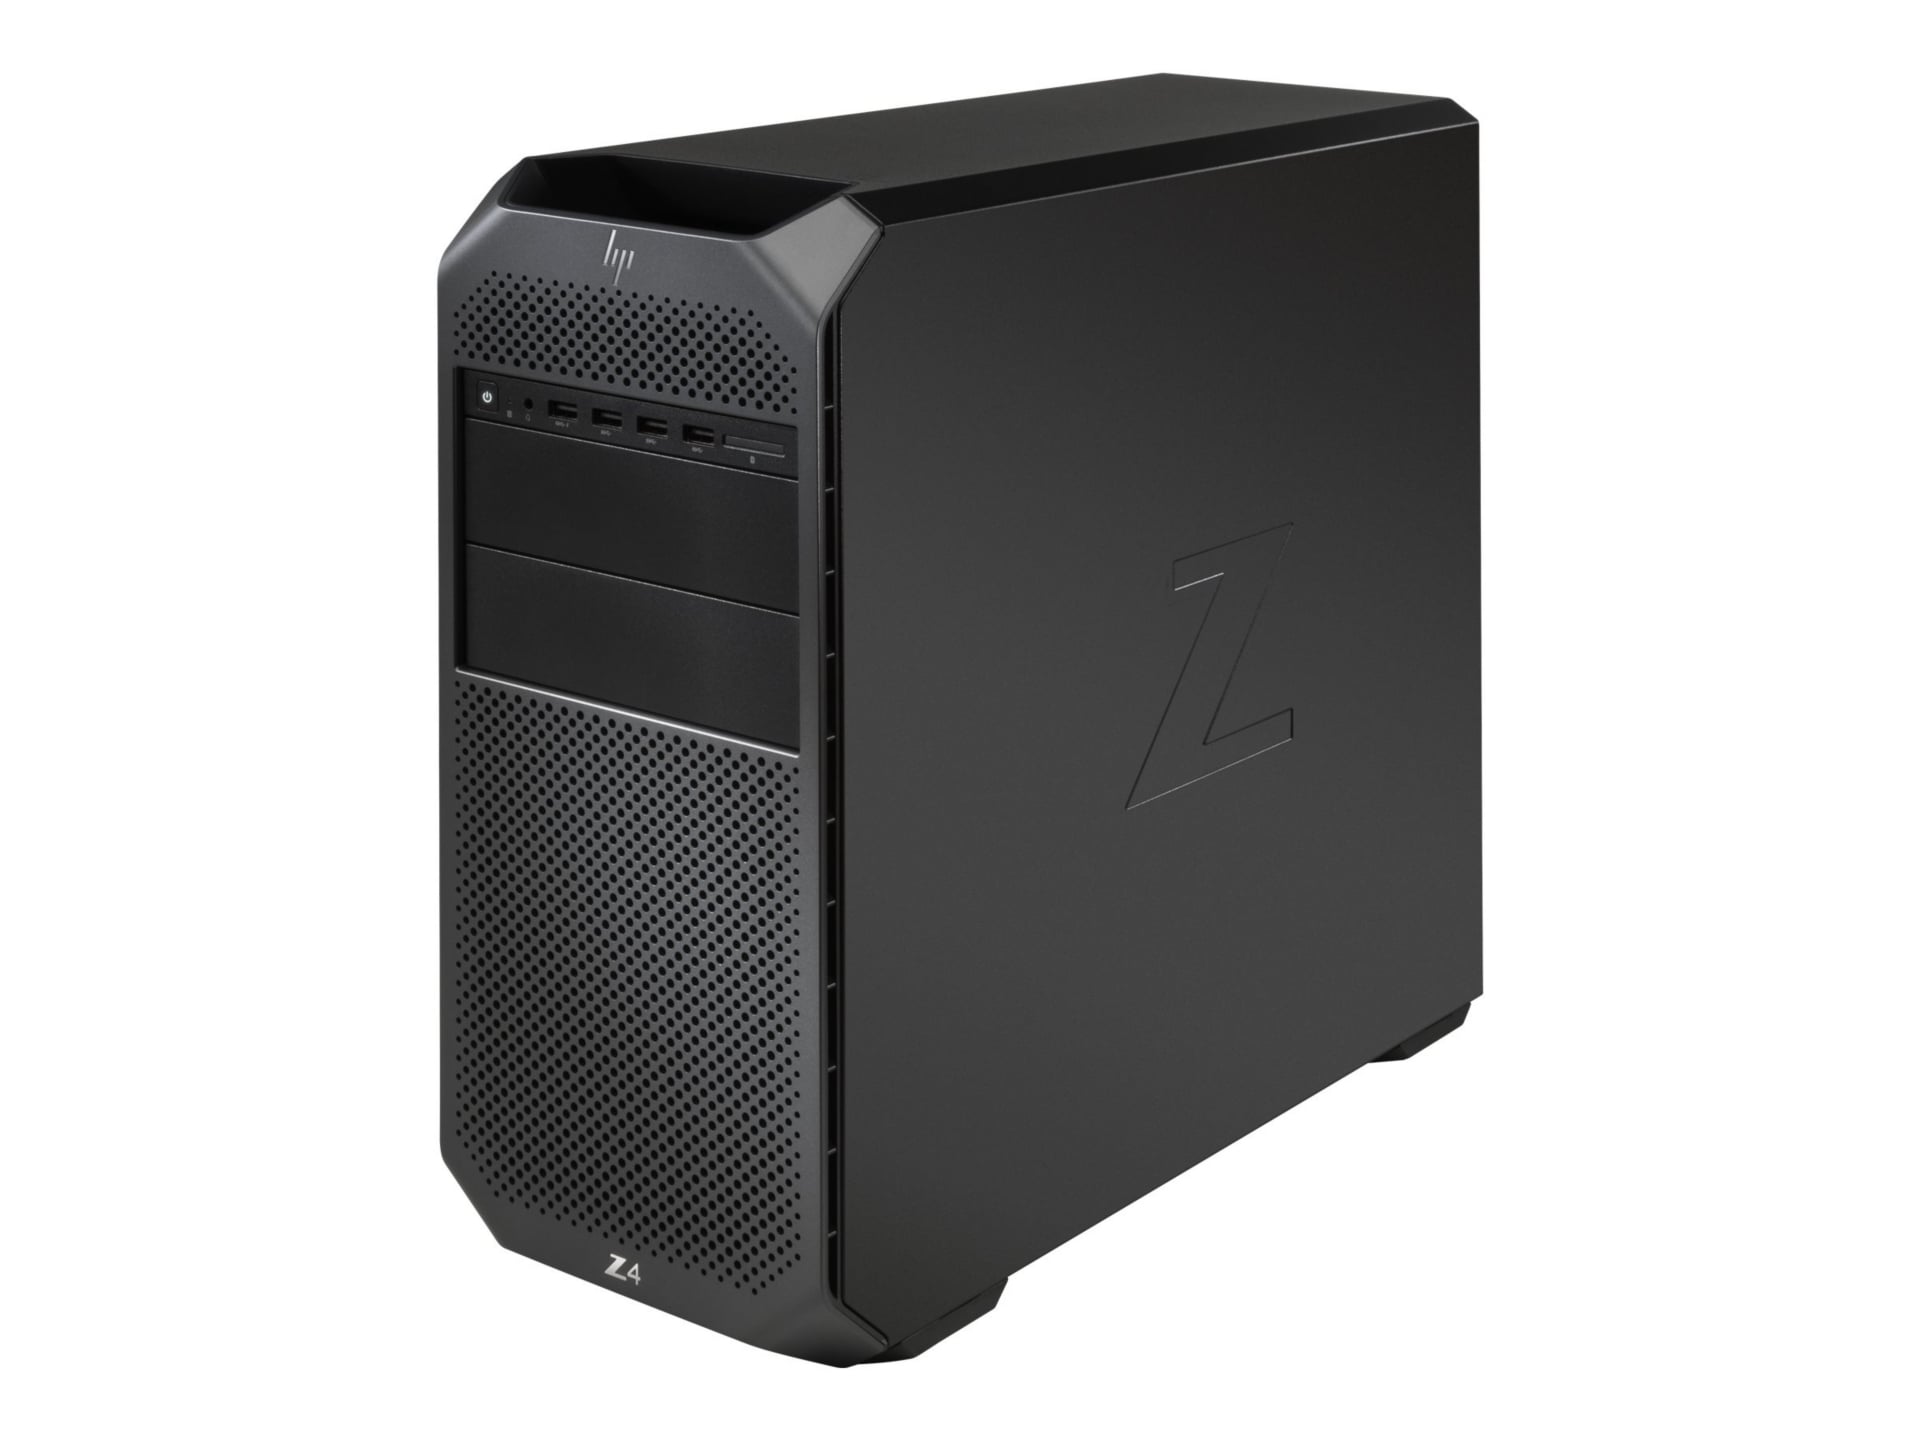 HP Z4 G4 Workstation - 1 x Intel Xeon W-2223 - 16 GB - 512 GB SSD - Mini-tower - Black